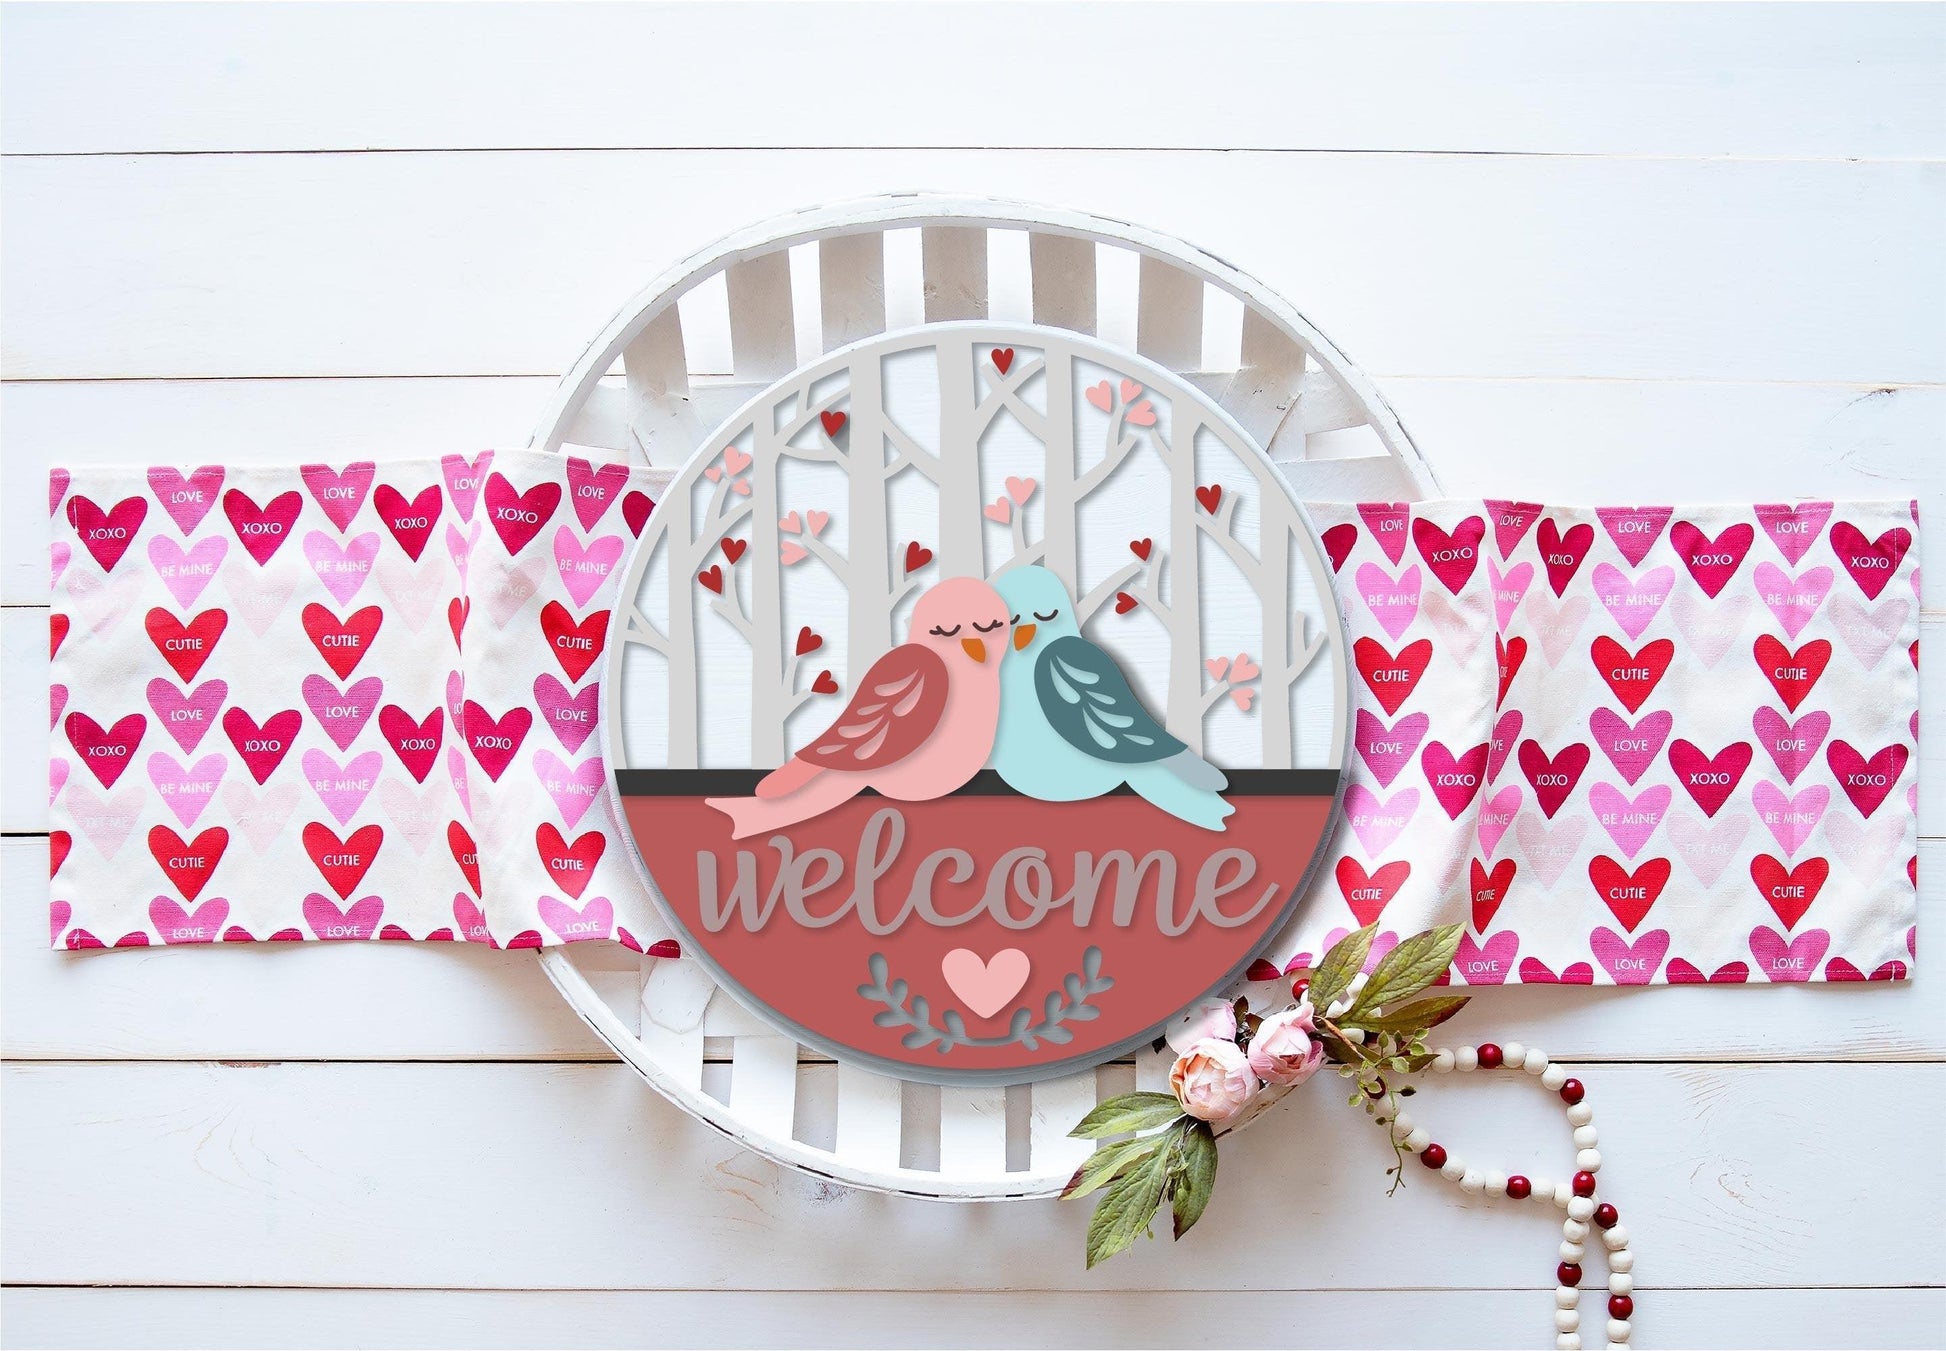 Welcome with Love Birds Valentine Door Hanger DIY - RusticFarmhouseDecor